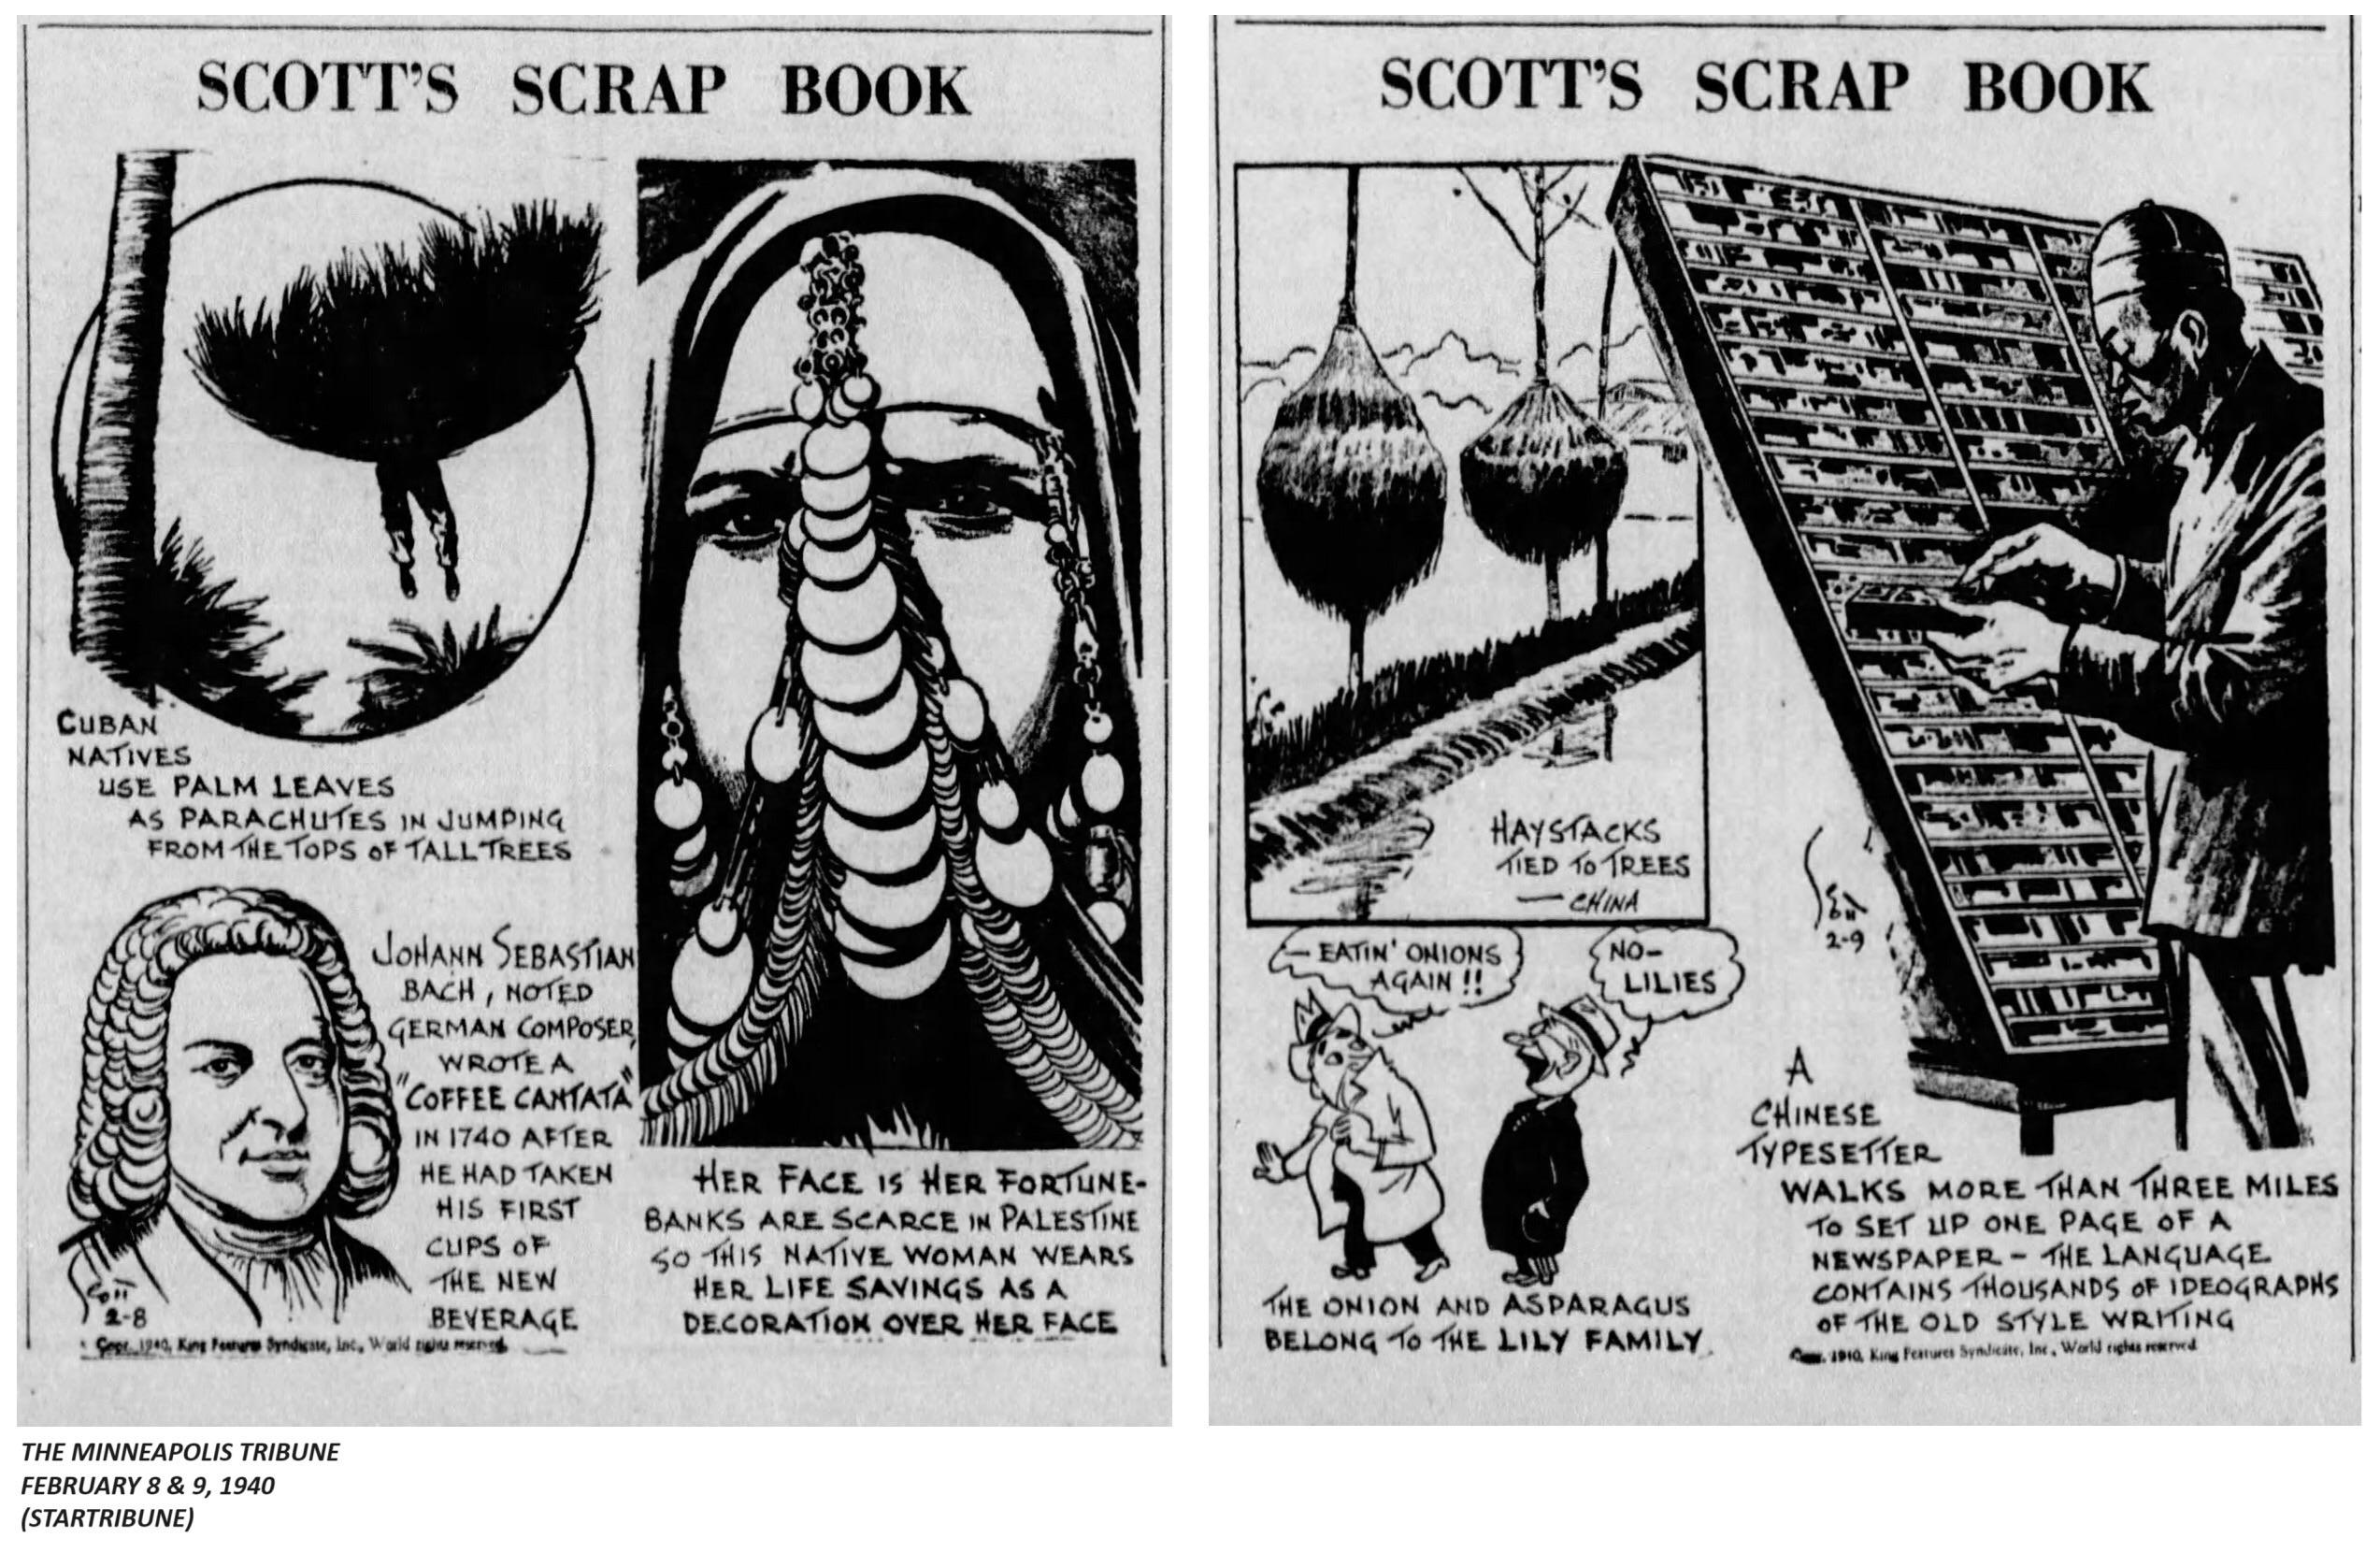 1940. SCOTT’S SCRAP BOOK.jpeg